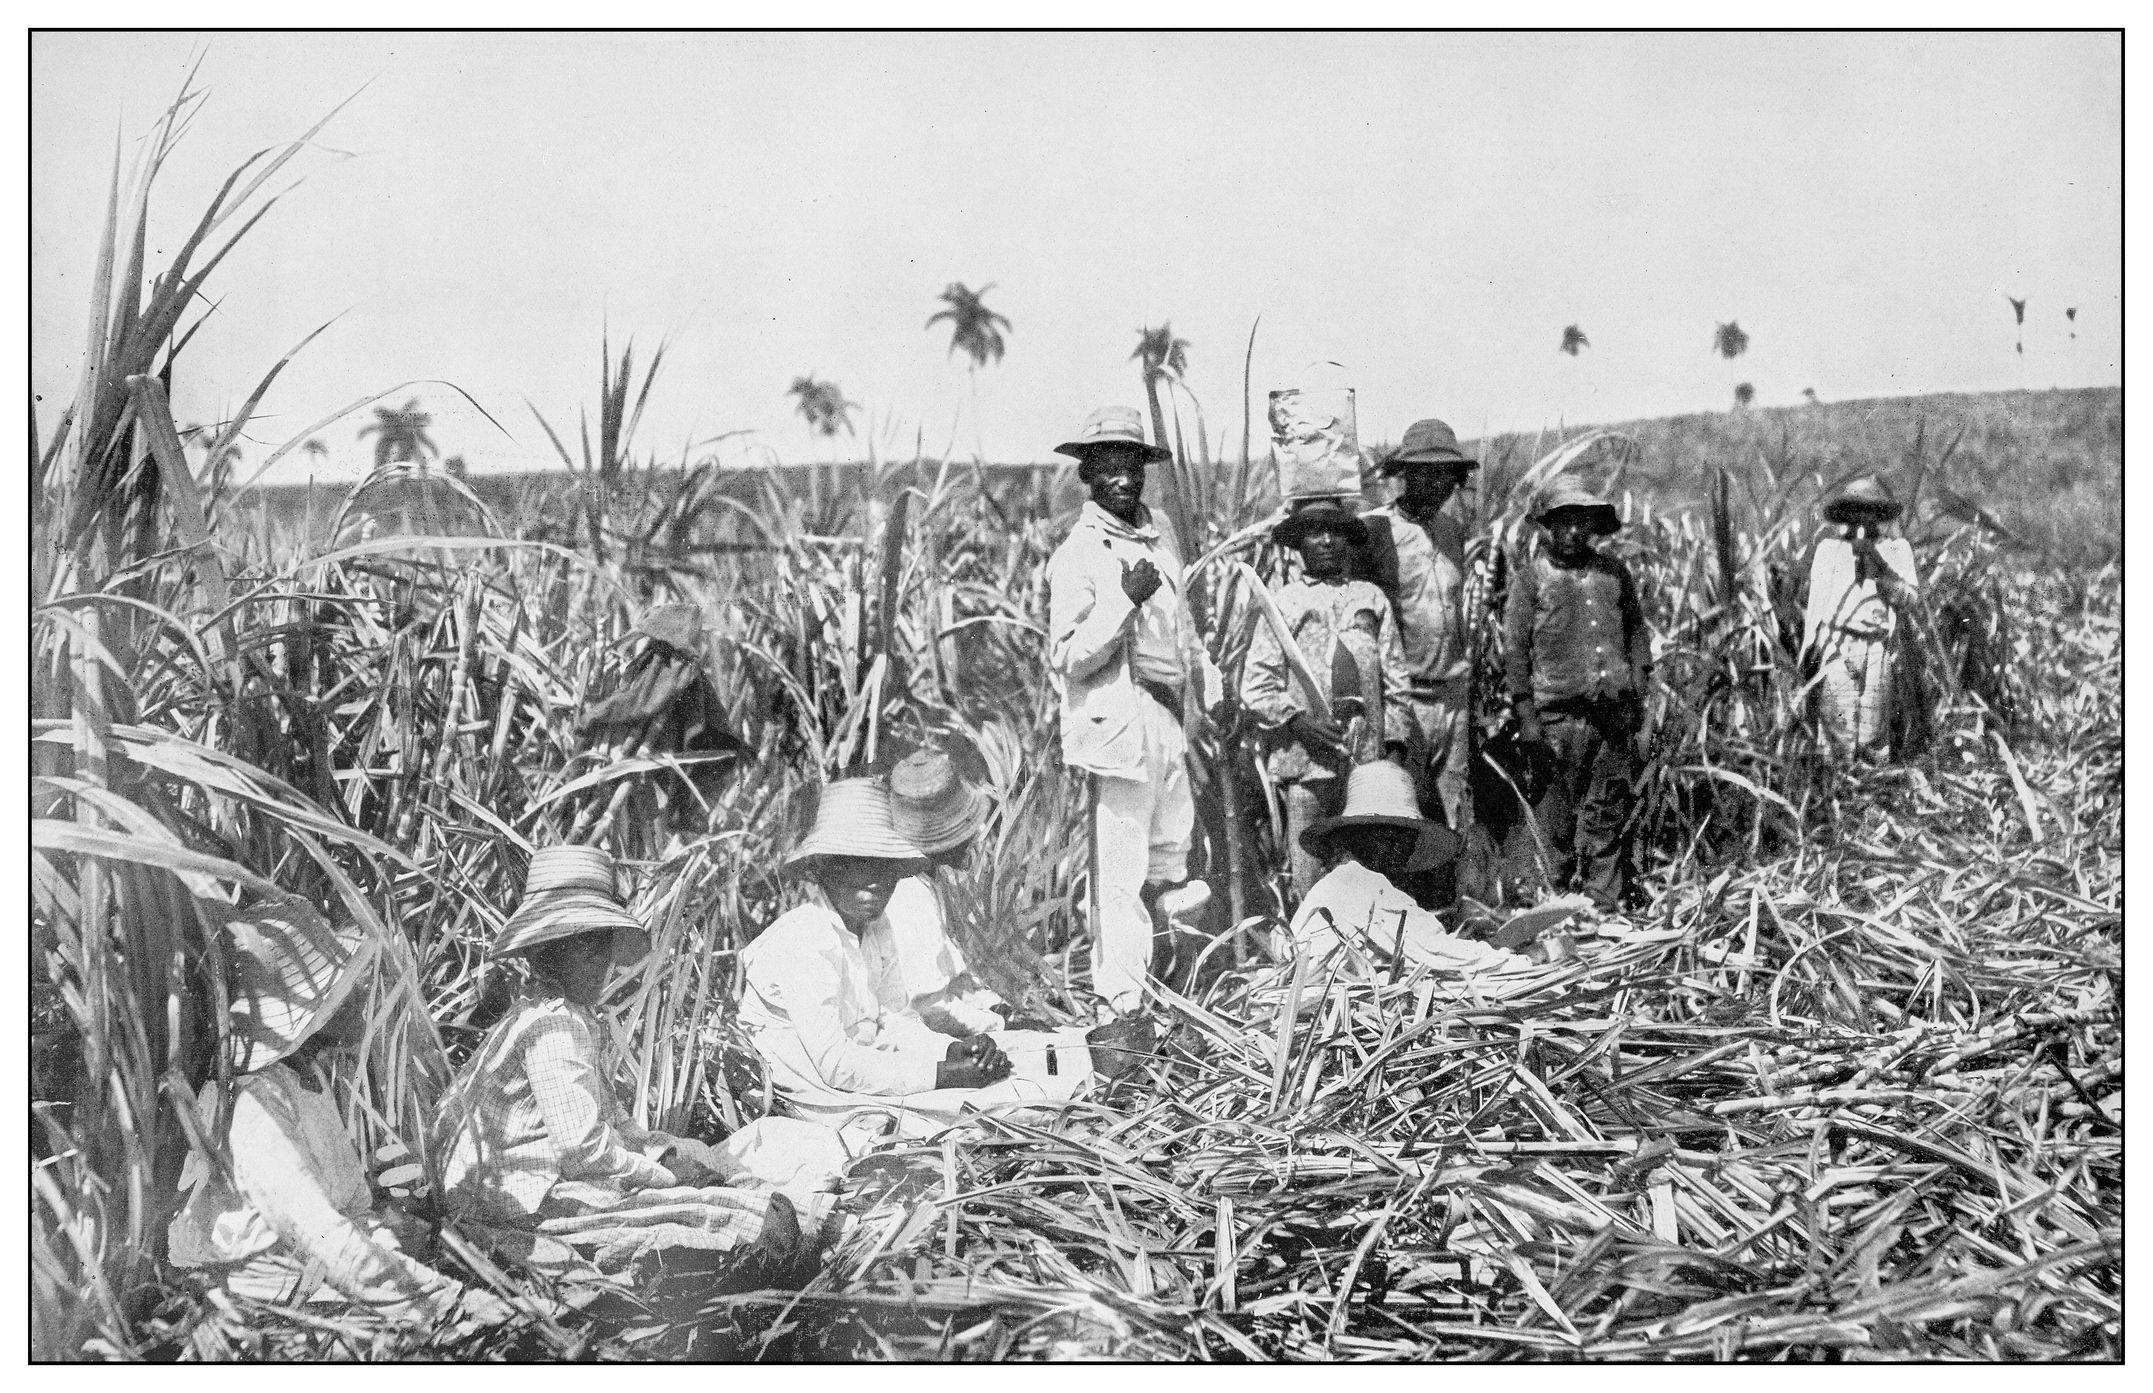 Trabajadores negros en un campo de caña de azúcar en Cuba. Fotografía sin fecha.